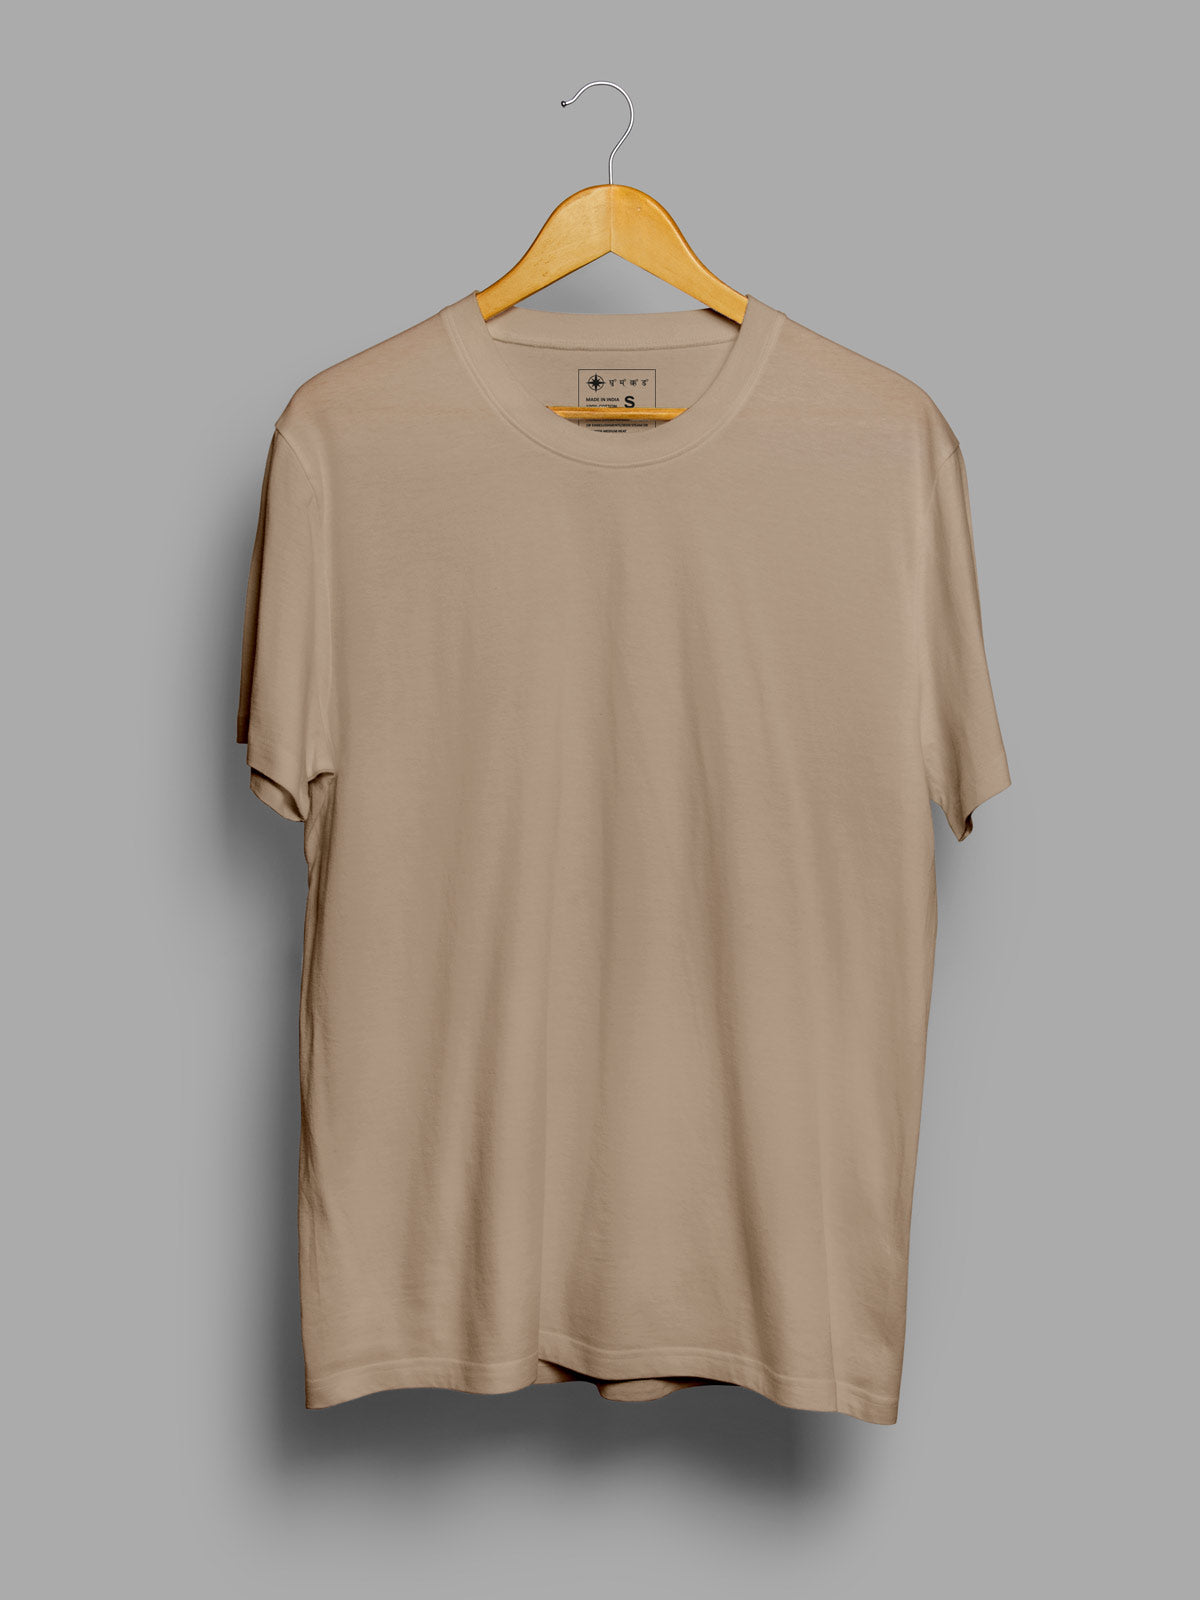 Pack of 3 | Black, Light Grey & Beige Unisex Plain T shirt